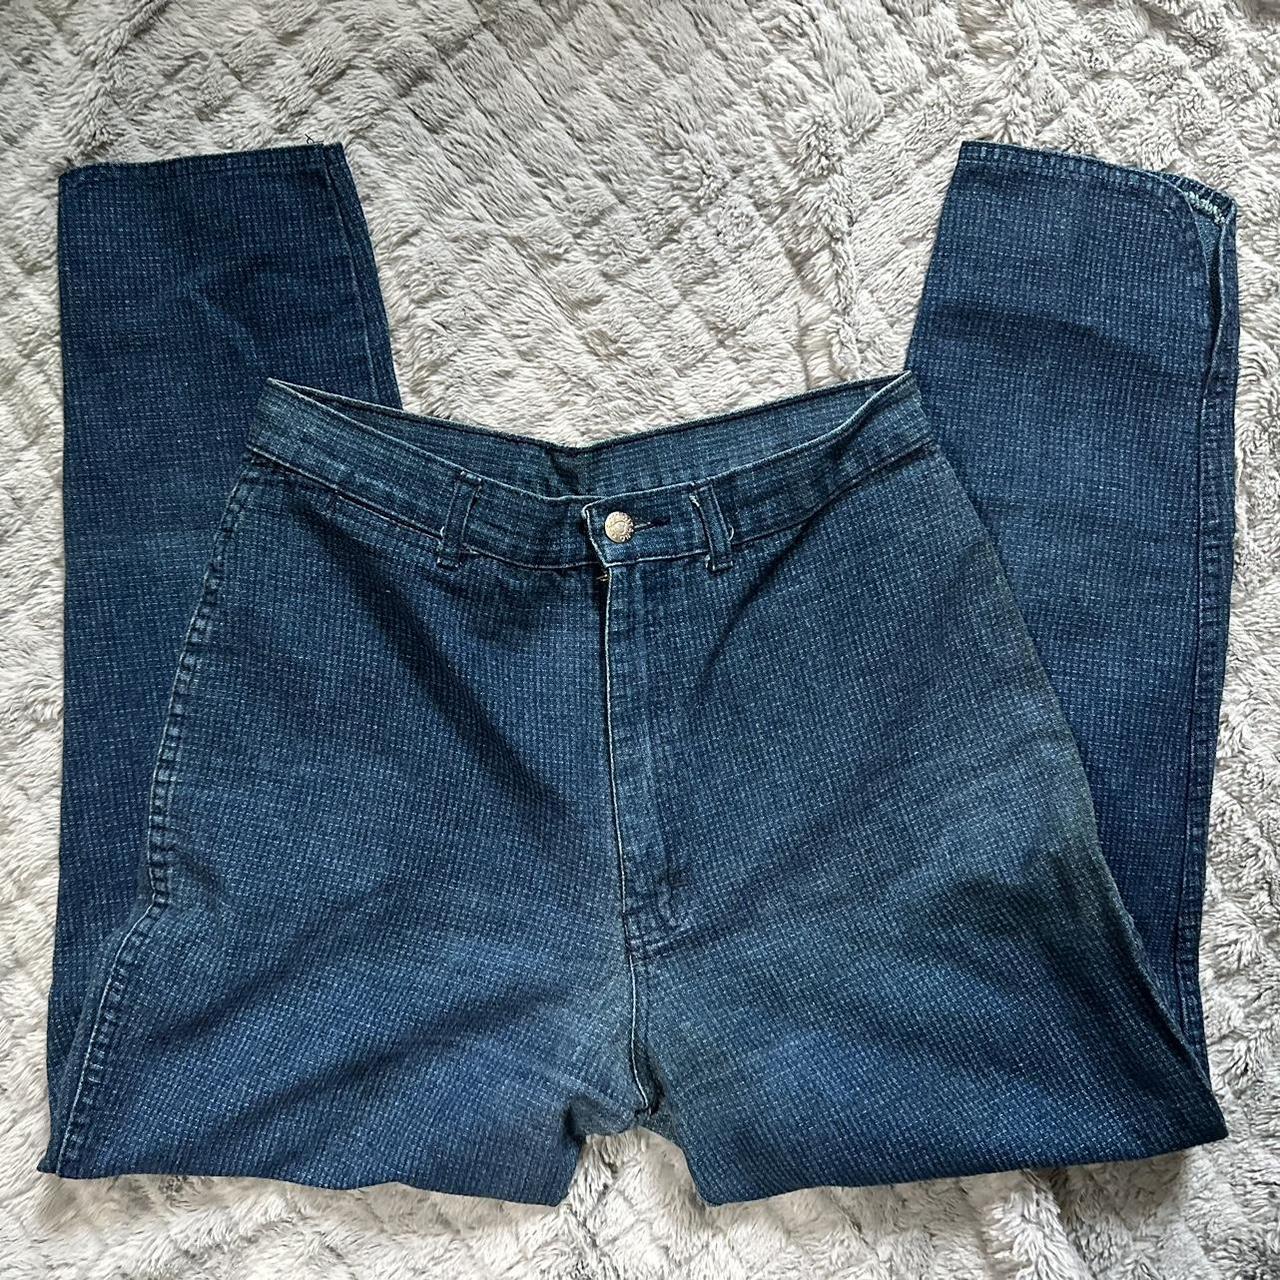 Vintage Gitano denim jeans • vintage 12, 29” waist... - Depop